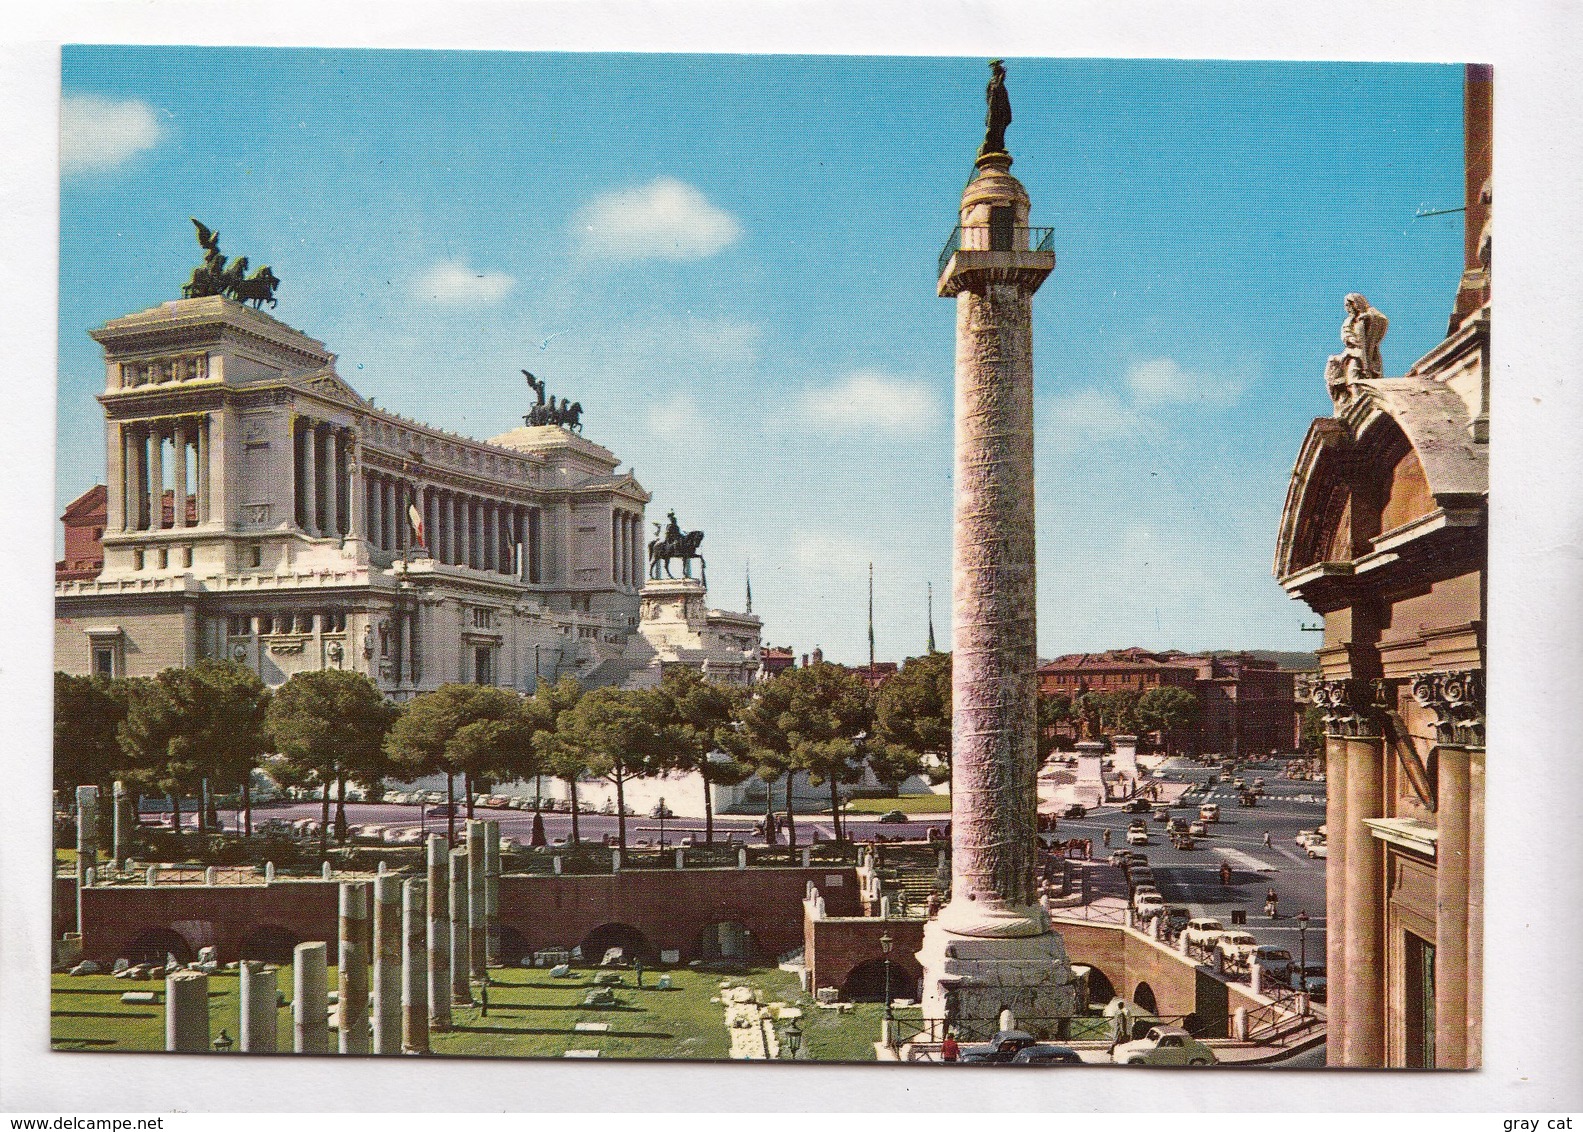 ROME, ROMA, Altare Della Patria, Altar Of The Nation, 1960s Unused Postcard [22912] - Altare Della Patria